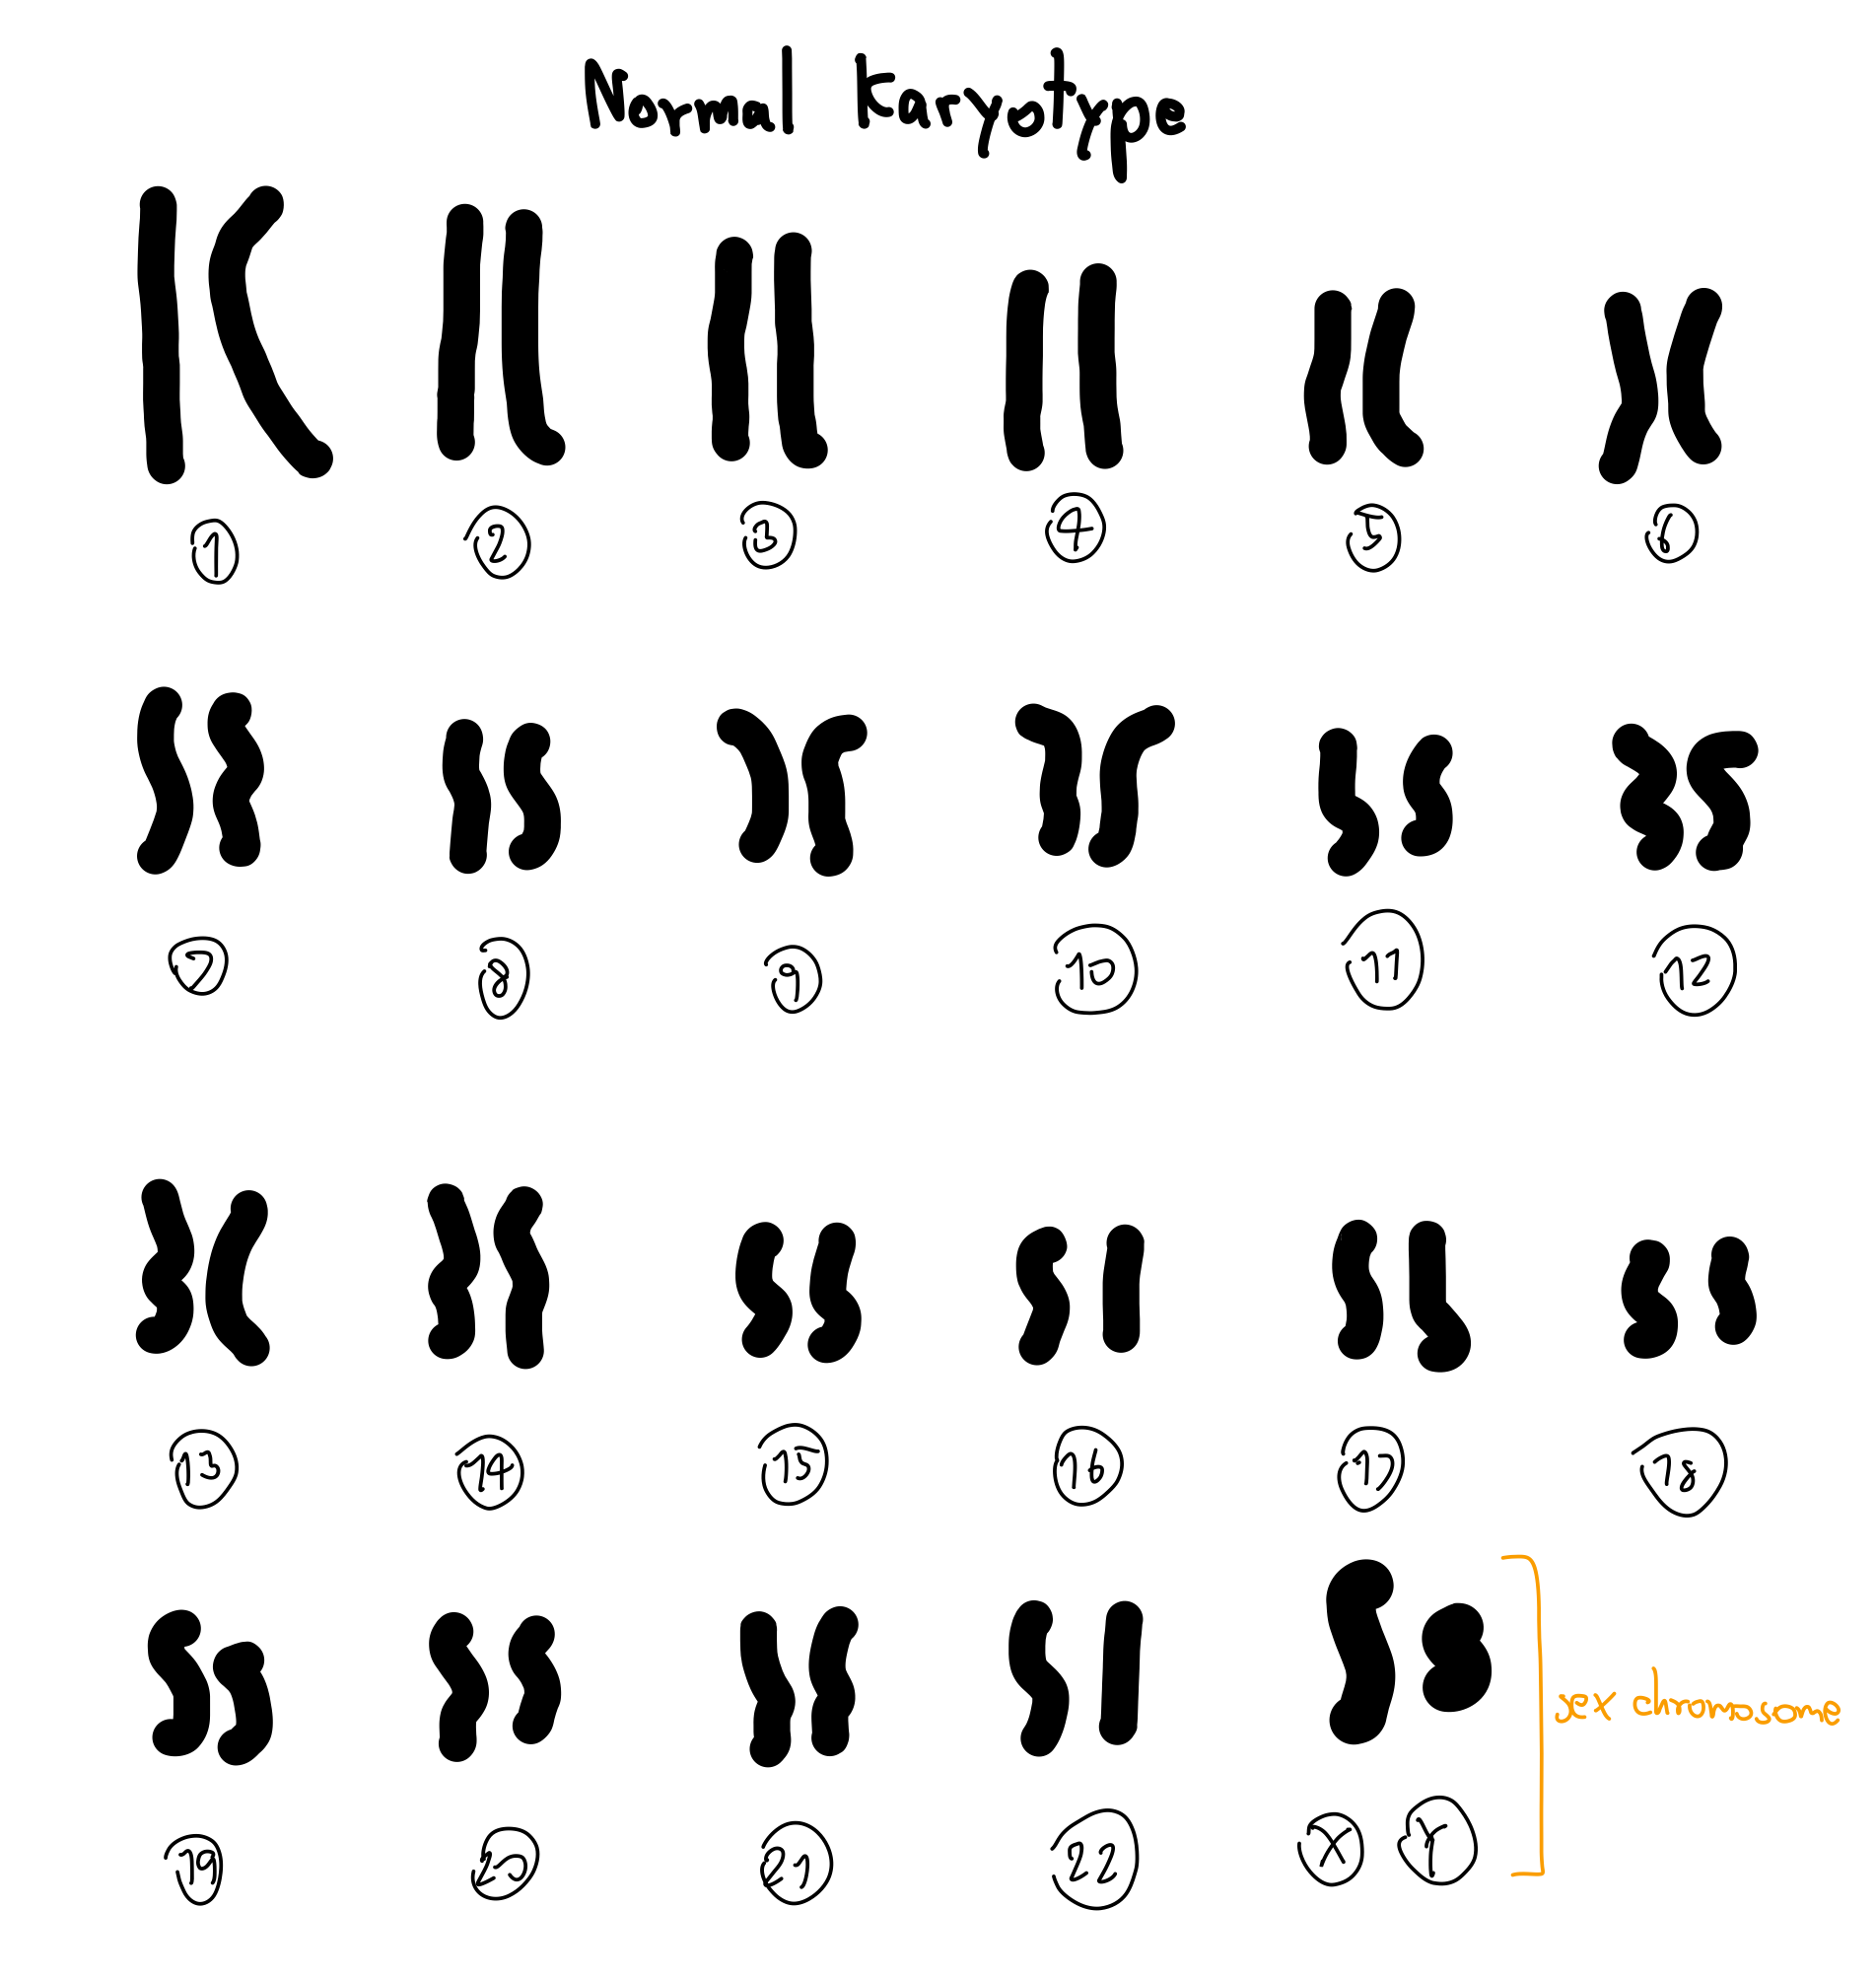 Normal People Karyotype